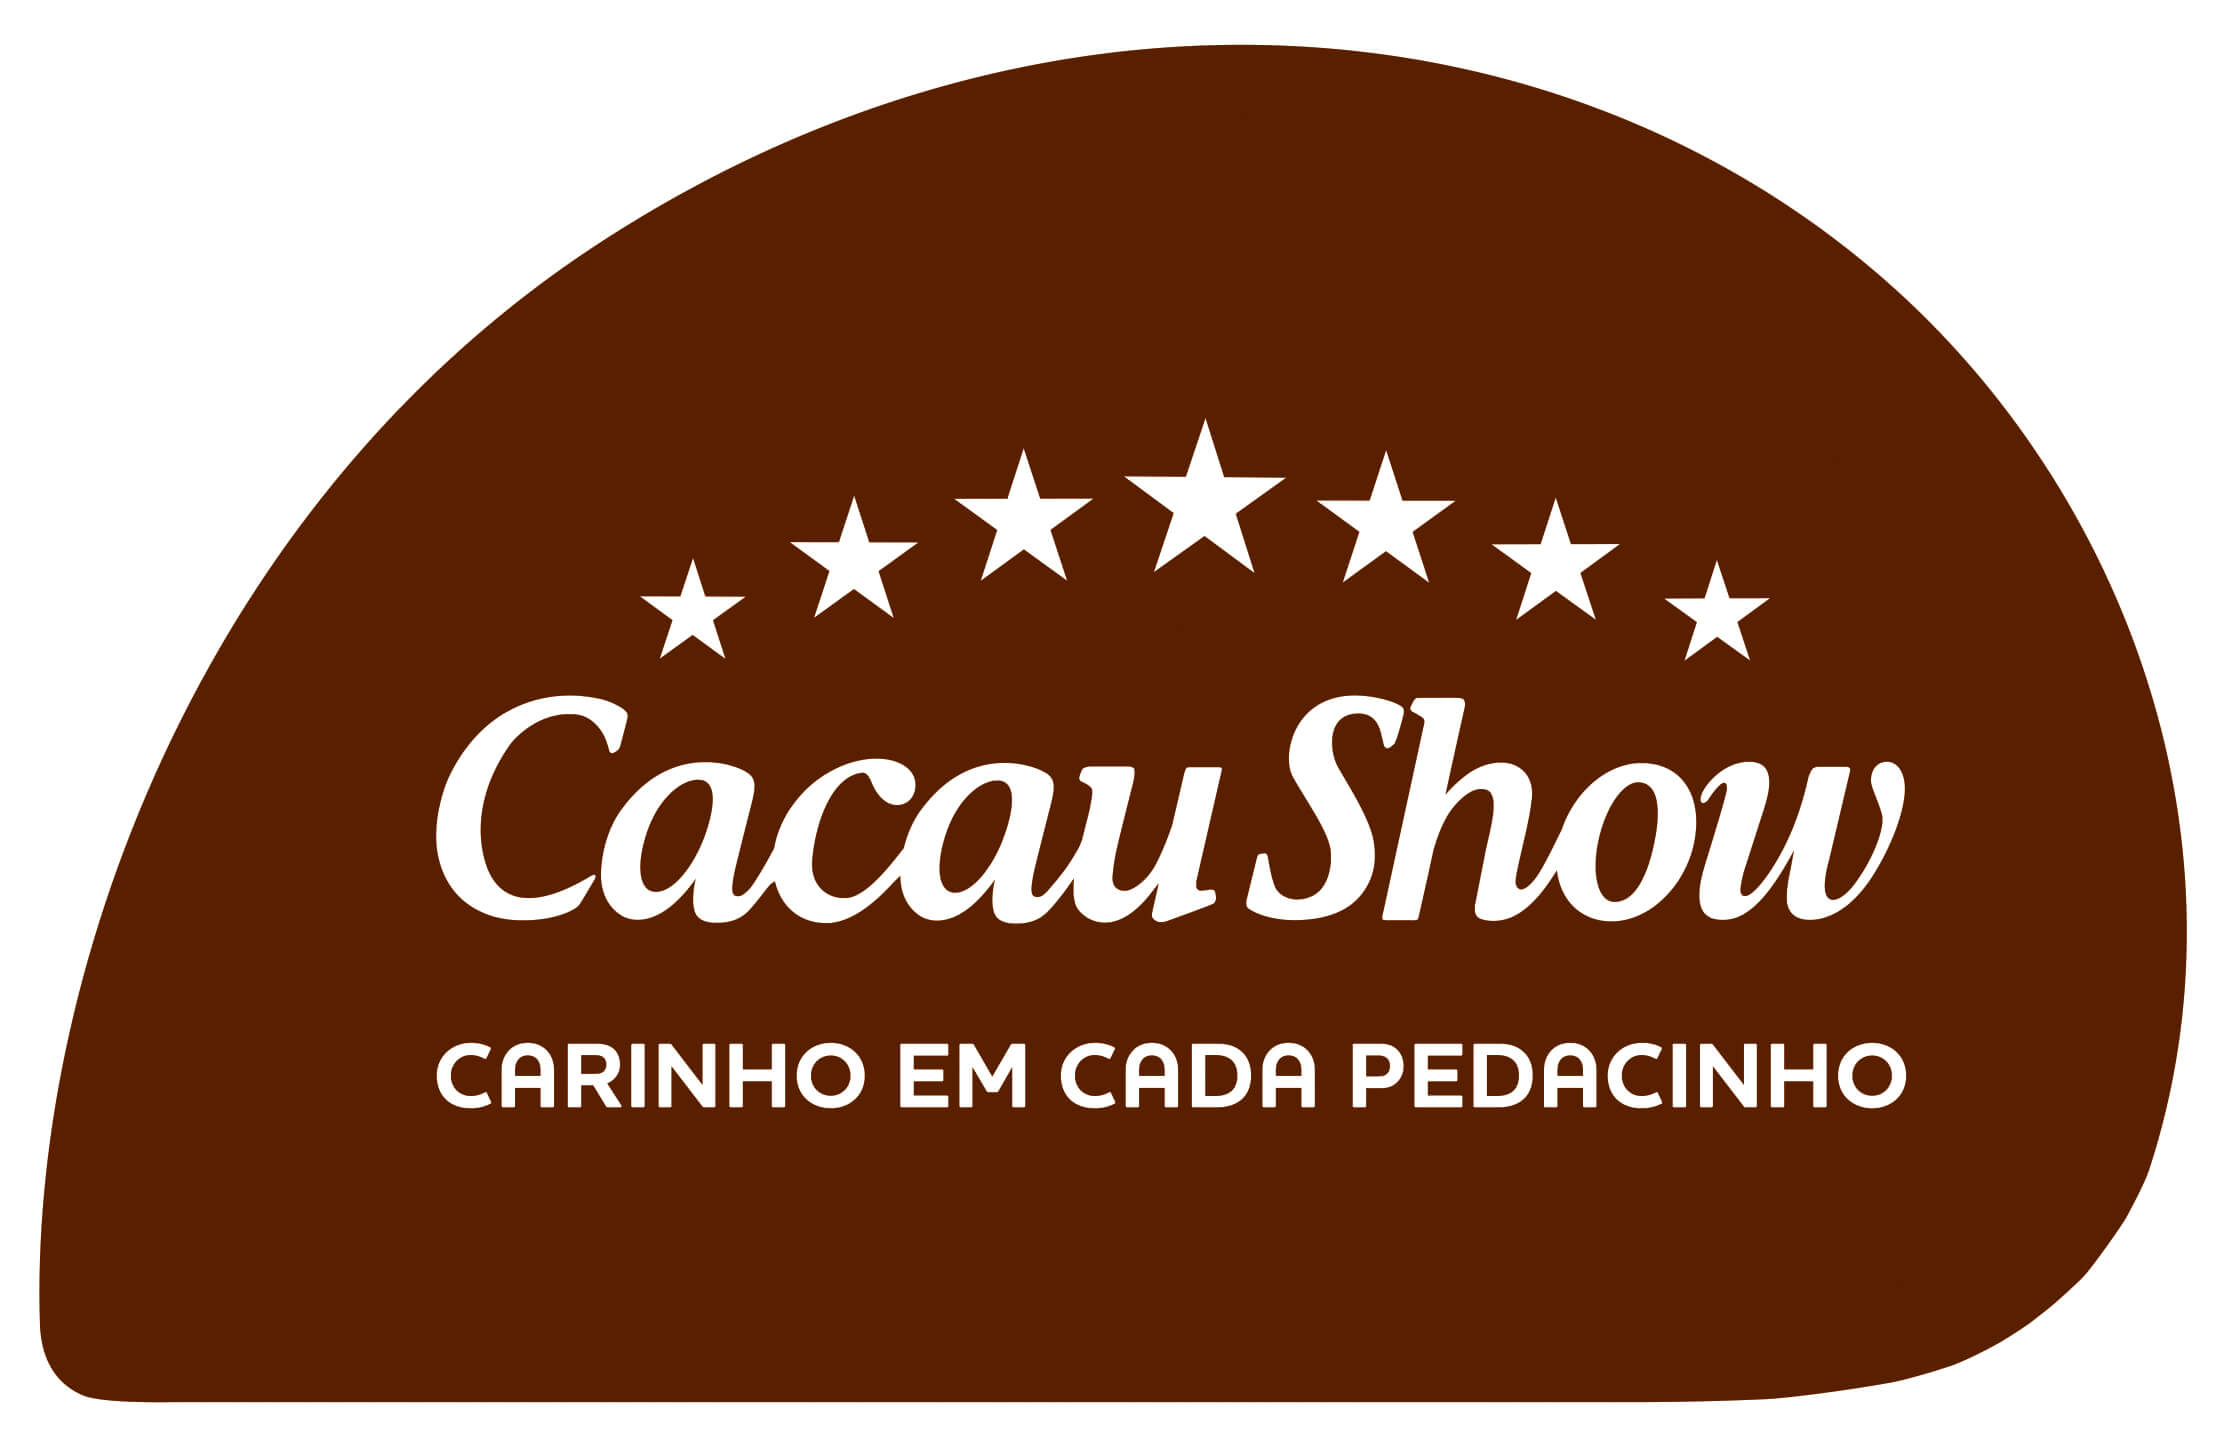 Cacau Show